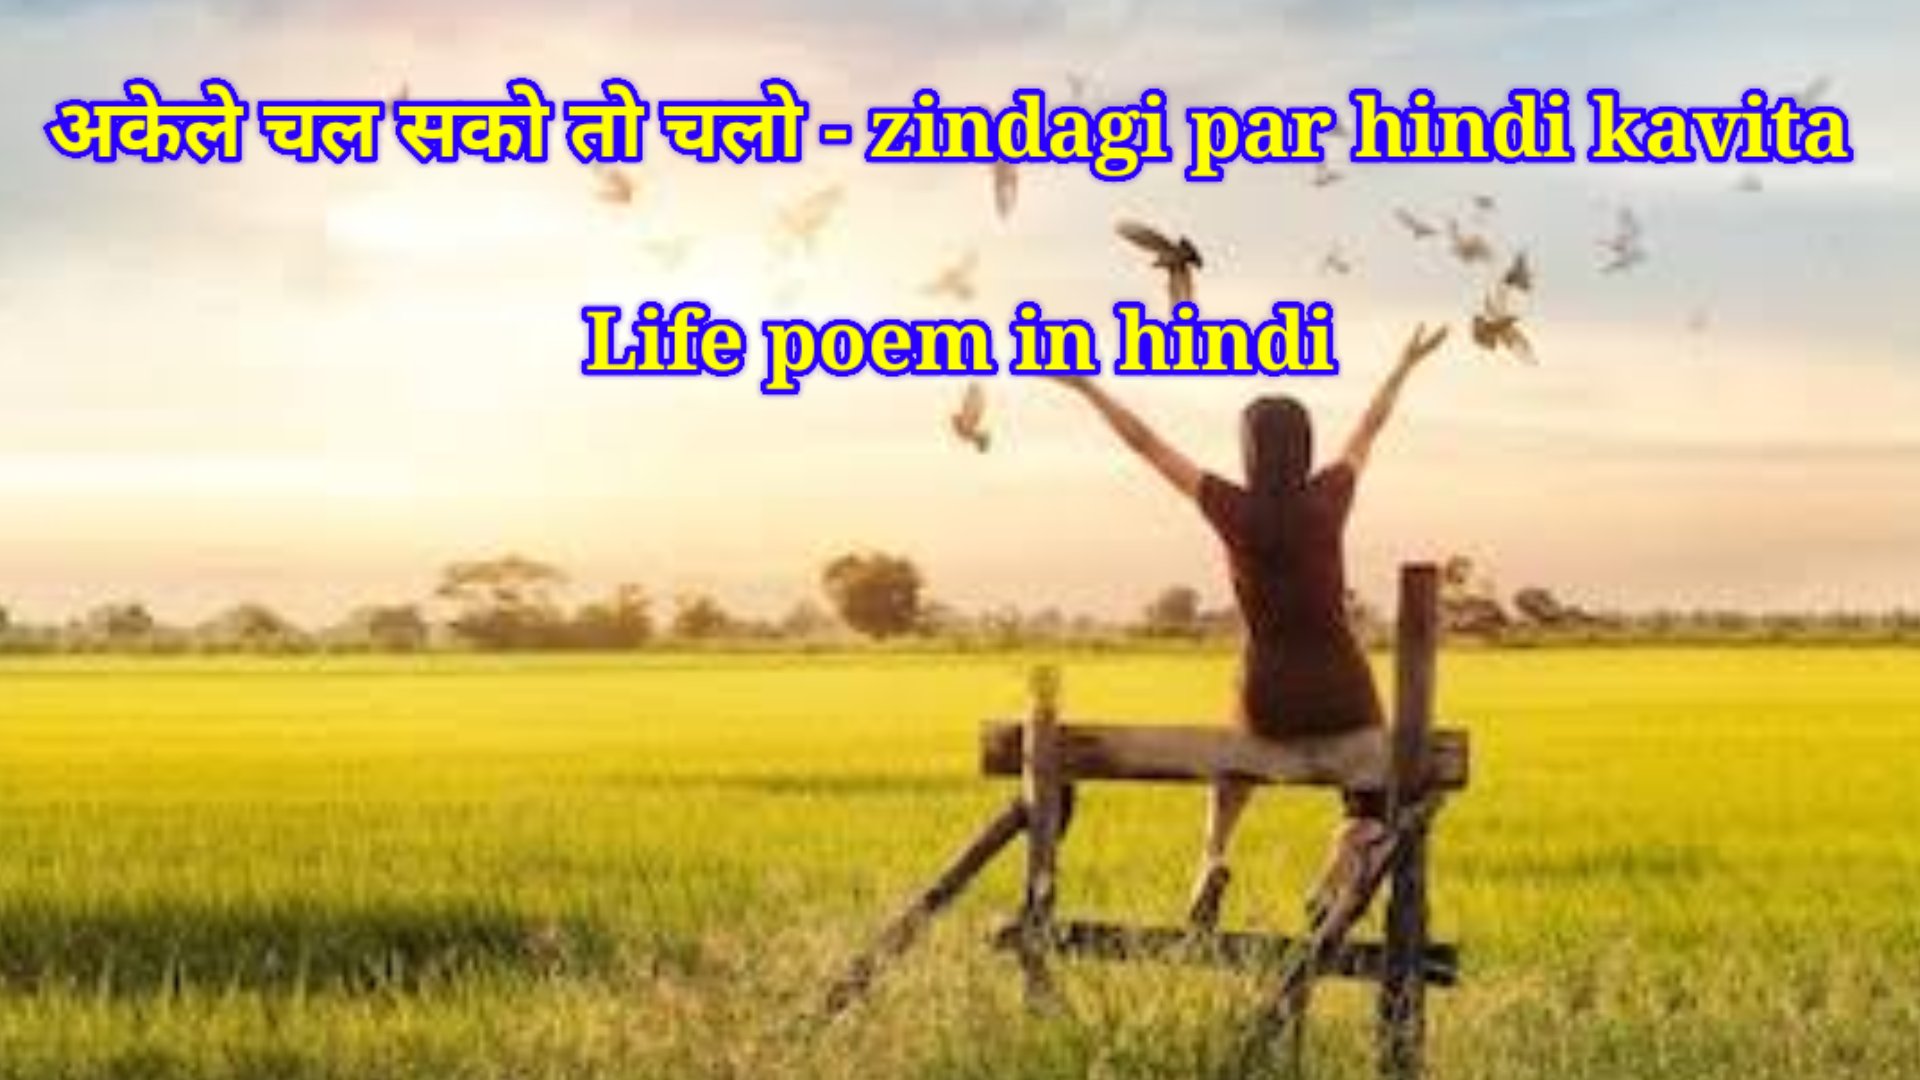 अकेले चल सको तो चलो - zindagi par hindi kavita (Life poem in hindi)